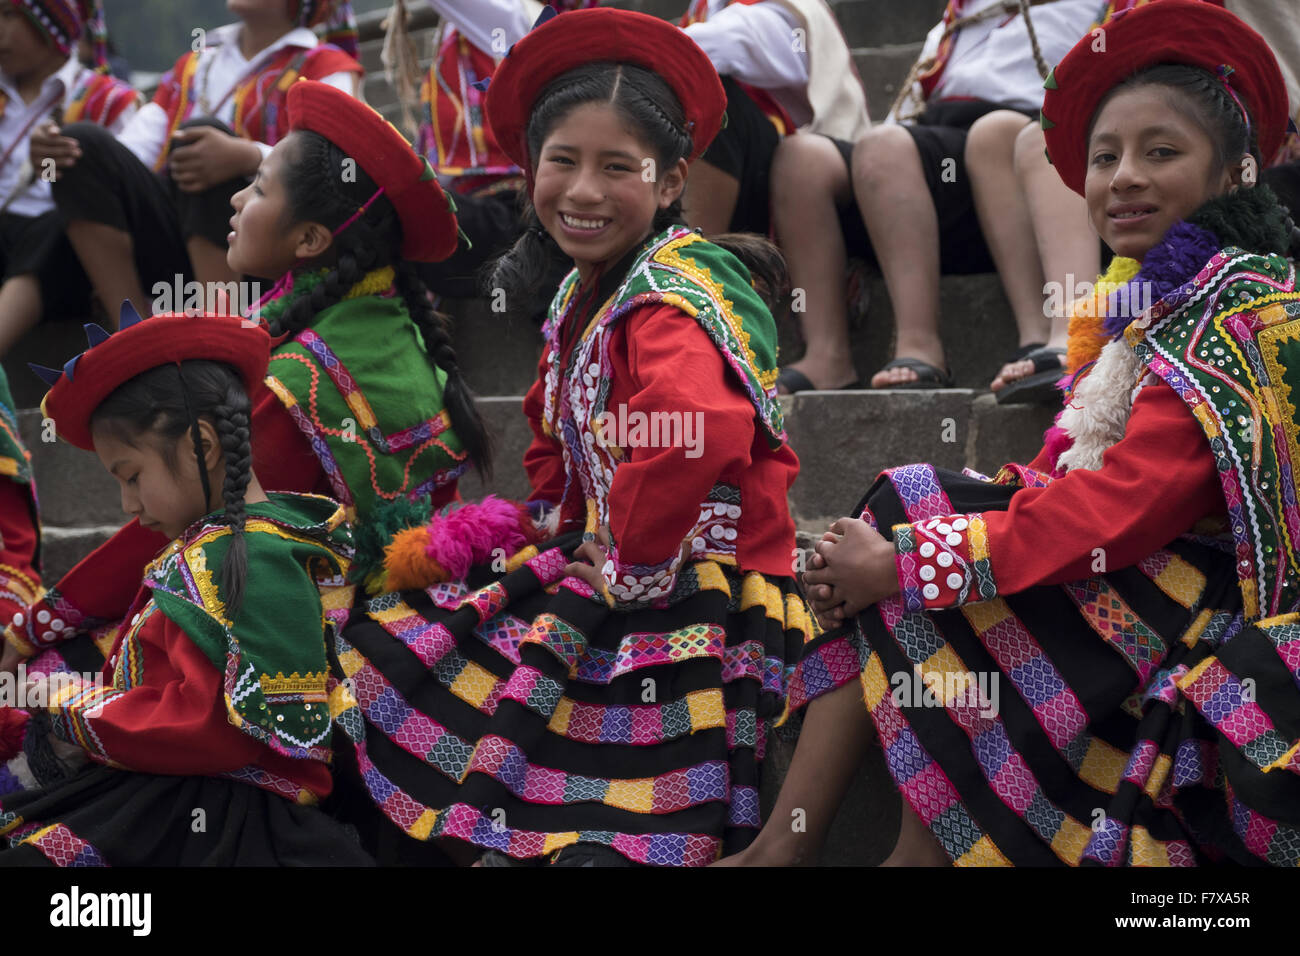 Un gruppo di bambini vestiti in costumi tradizionali partecipare ad un evento nella città di Cuzco. Foto Stock